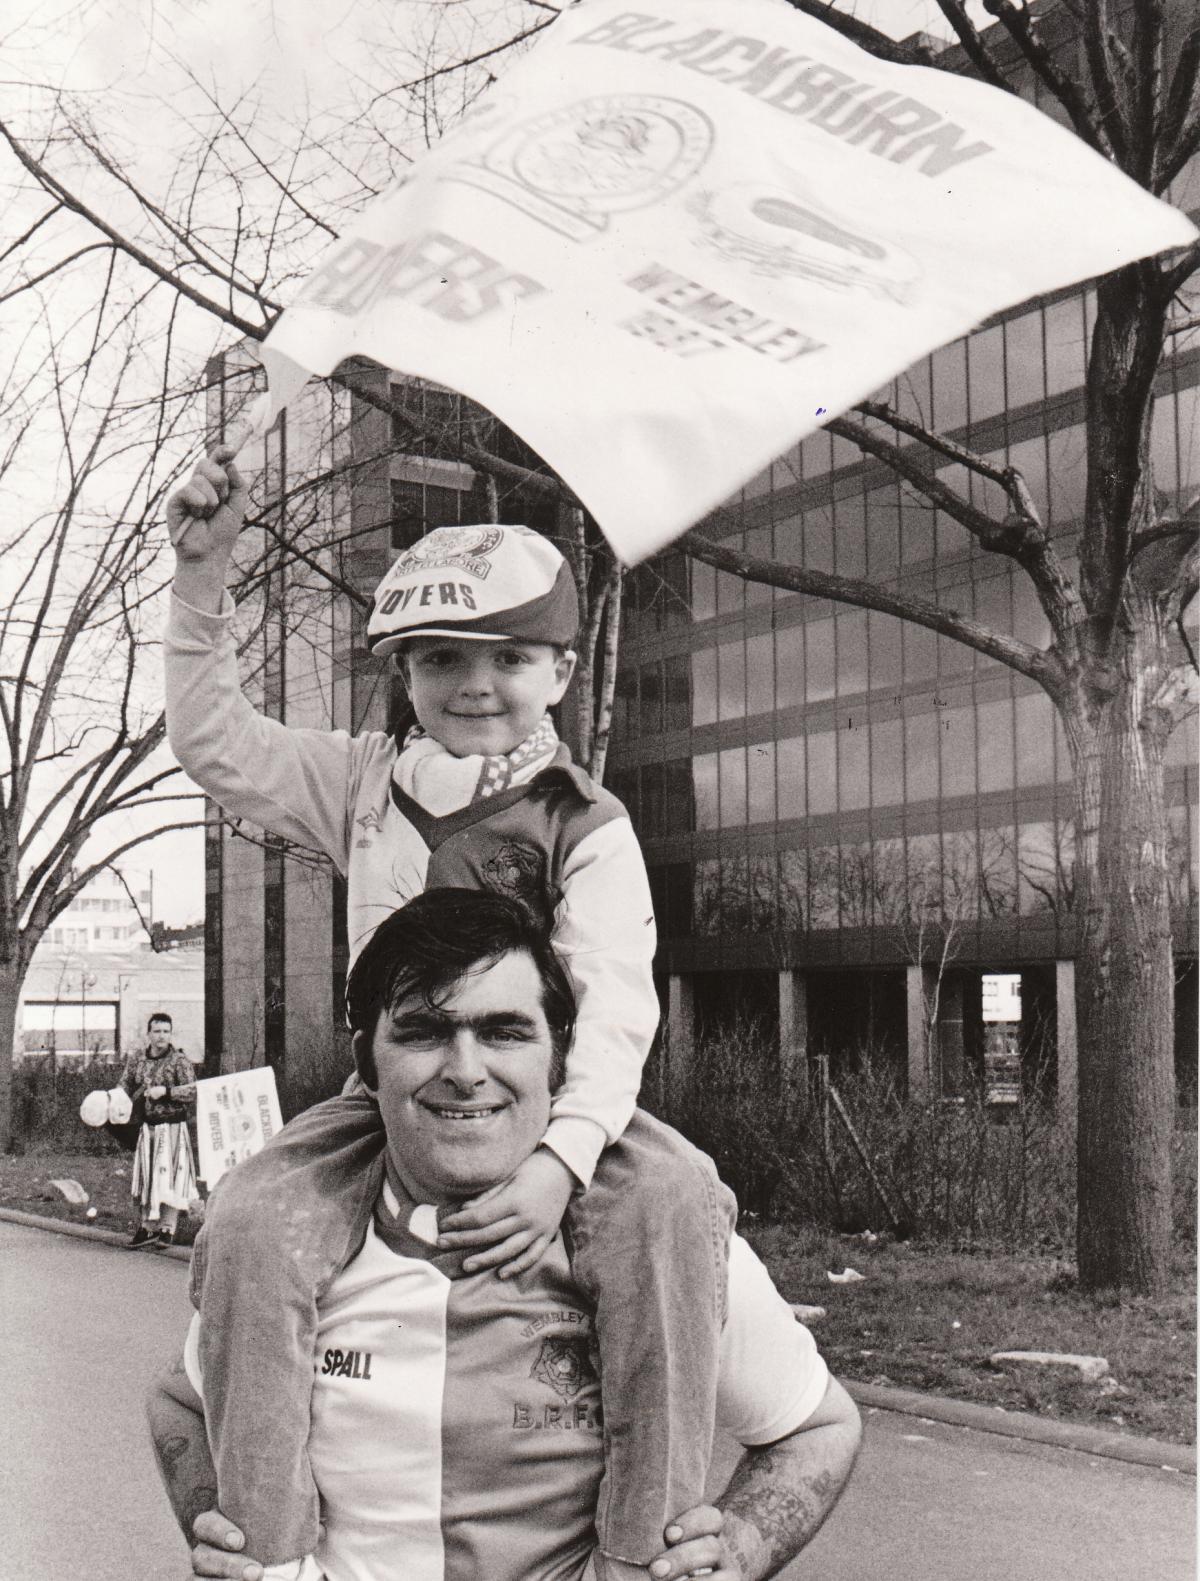 Robert Moulden with dad Robert senior in 1987.